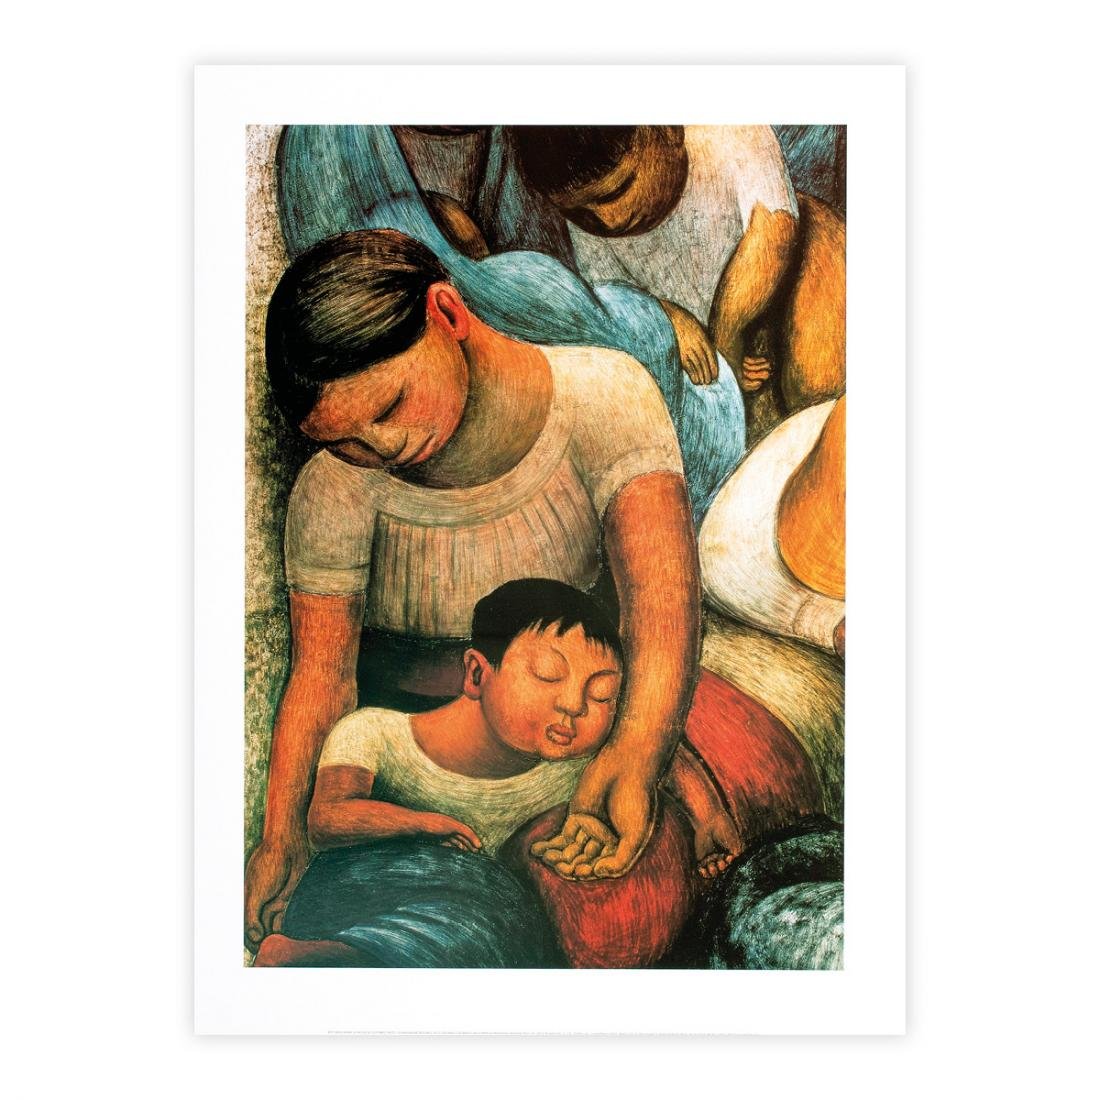 Diego Rivera, La noche de los pobres